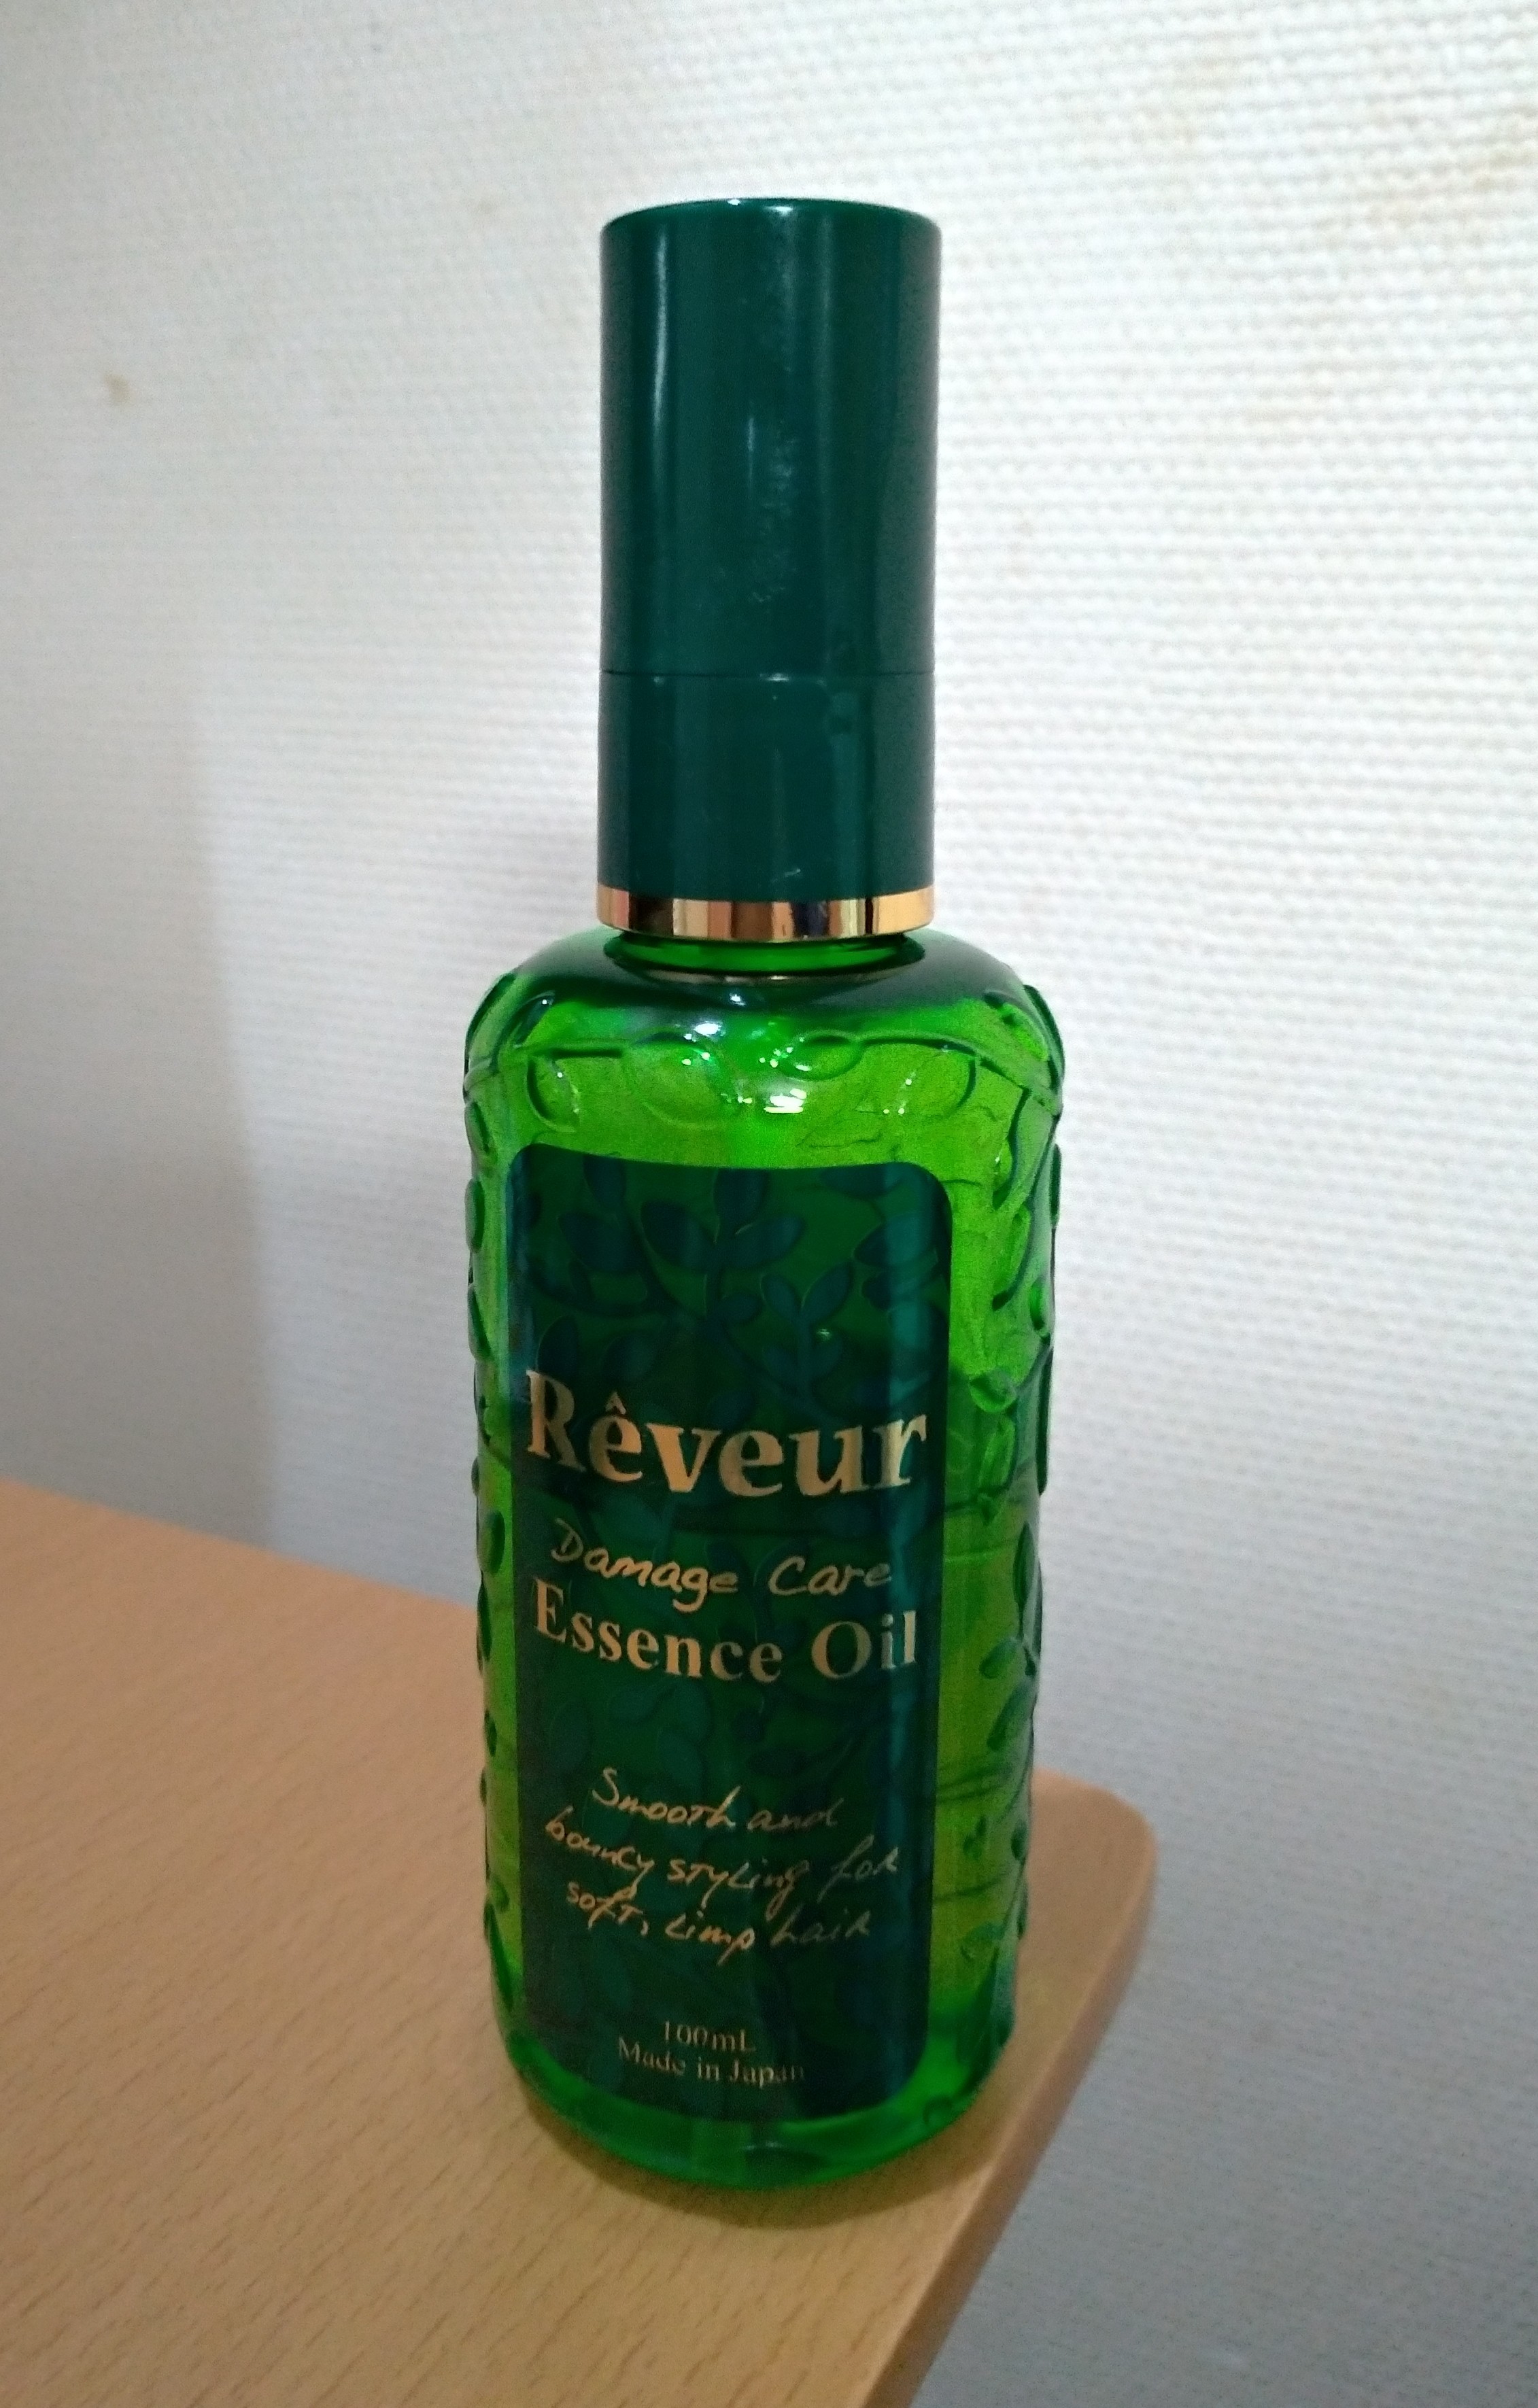 Reveur(レヴール) / ダメージケア エッセンスオイルの公式商品情報 